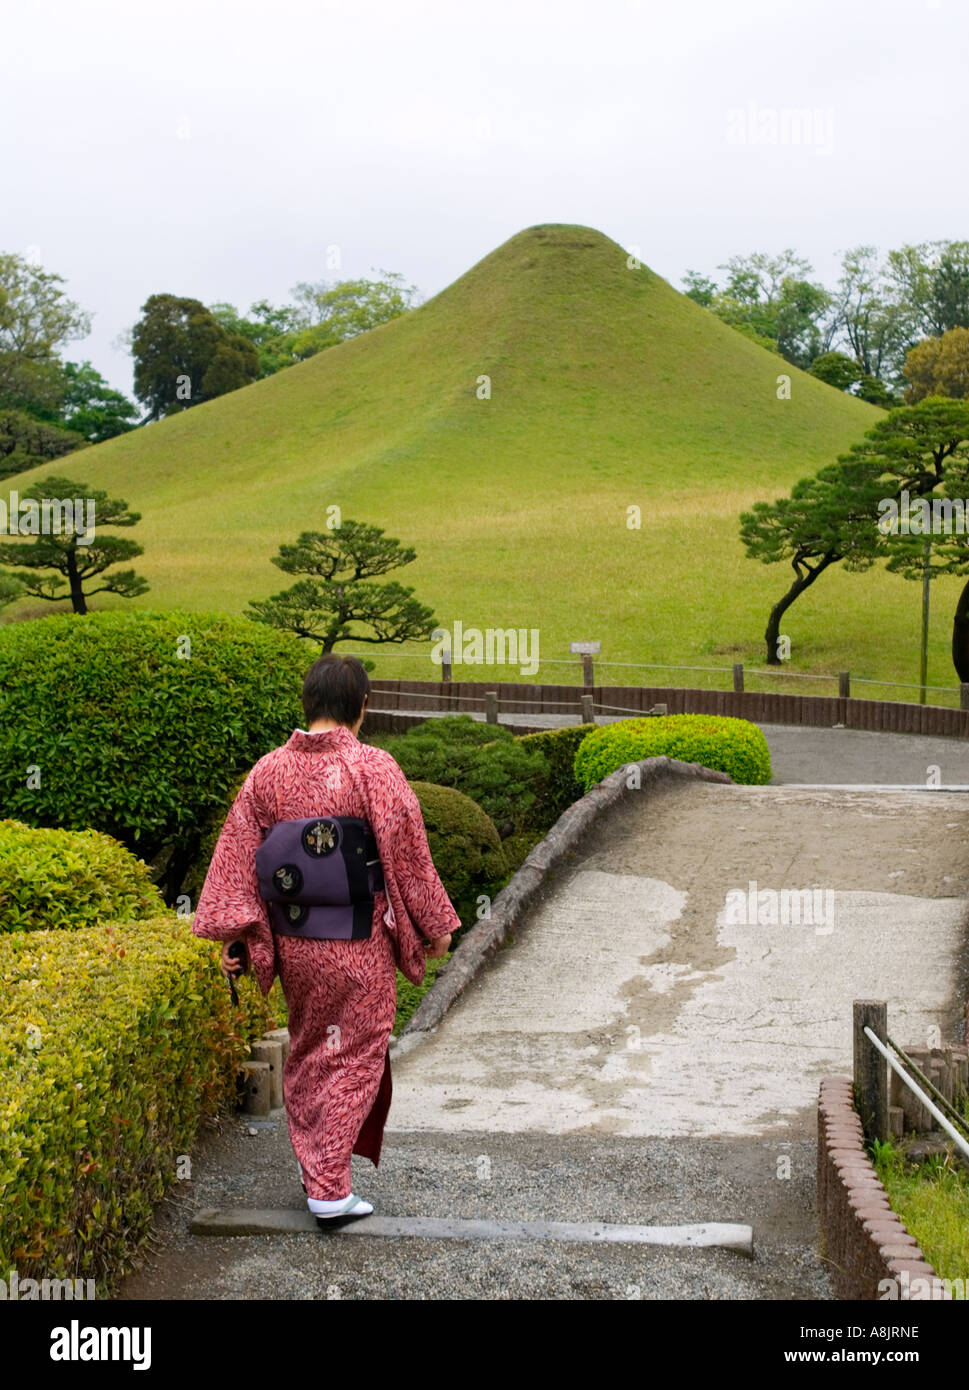 Famous Suizenji garden in Kumamoto Kyushu Japan with Mount Fuji hill Stock Photo